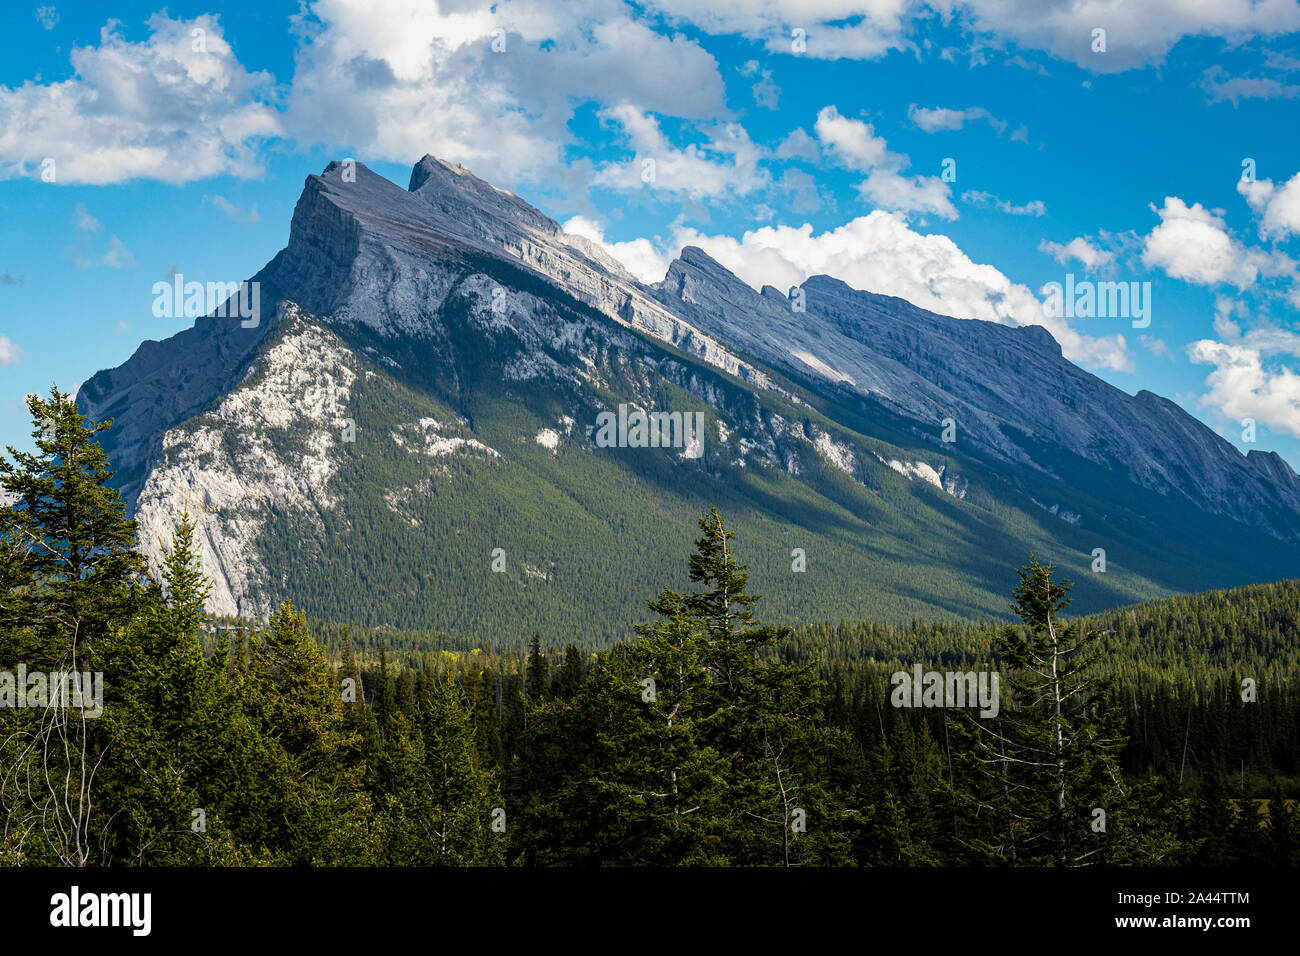 Vue extraordinaire sur le mont Rundle majestueux sur une journée ensoleillée du point de vue des lacs Vermilion, Banff National Park, Alberta, Canada Banque D'Images